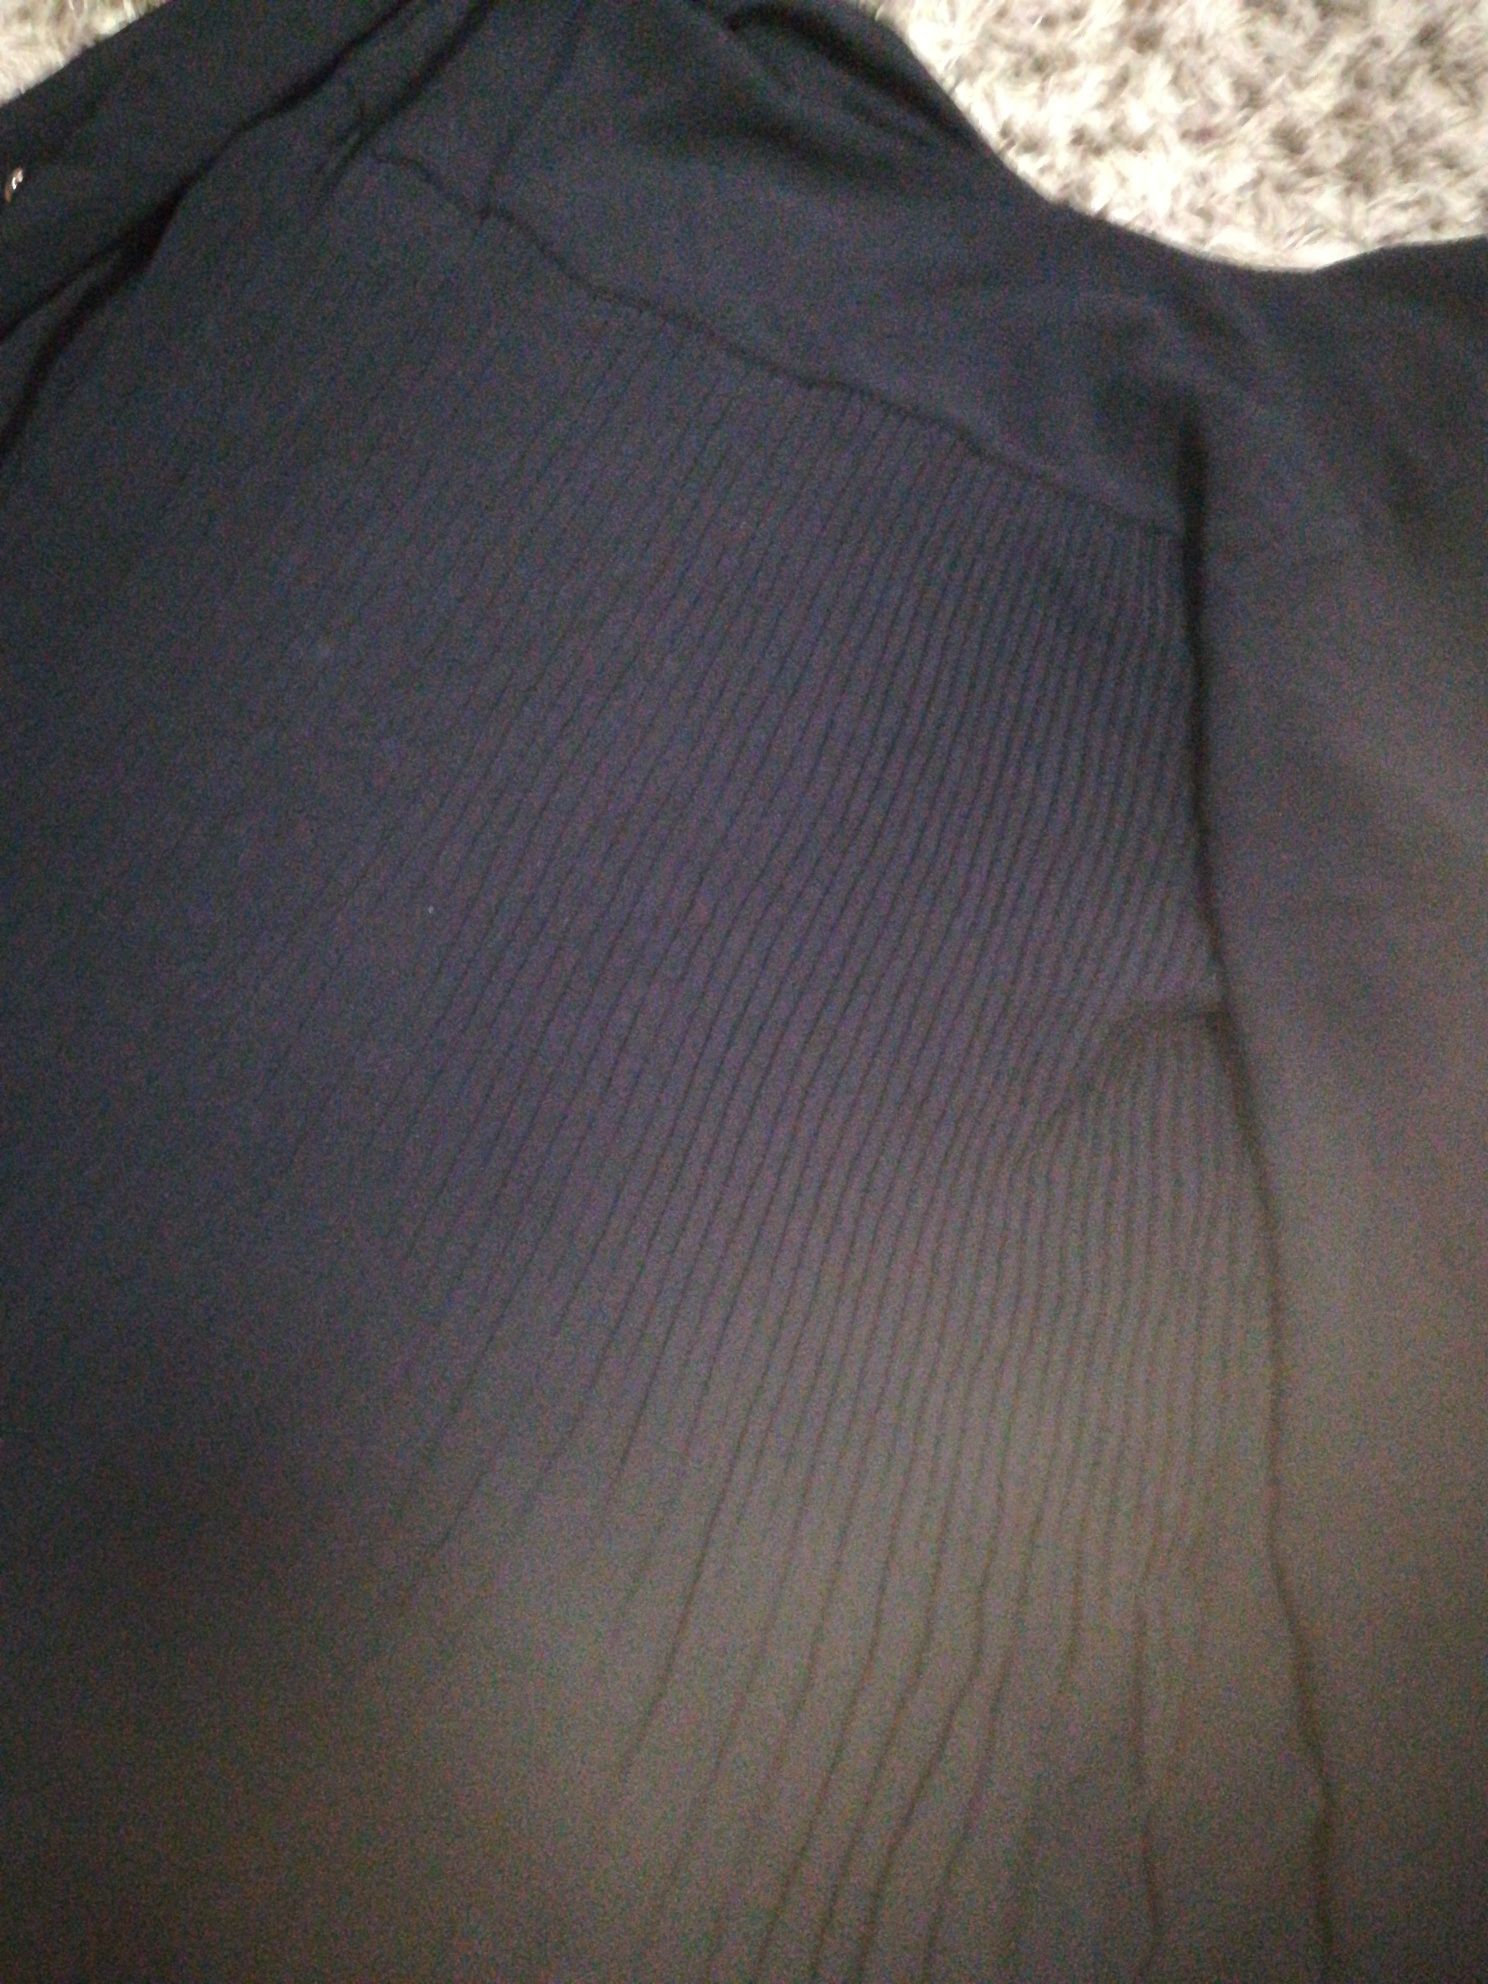 Camisola preta com botões nas mangas